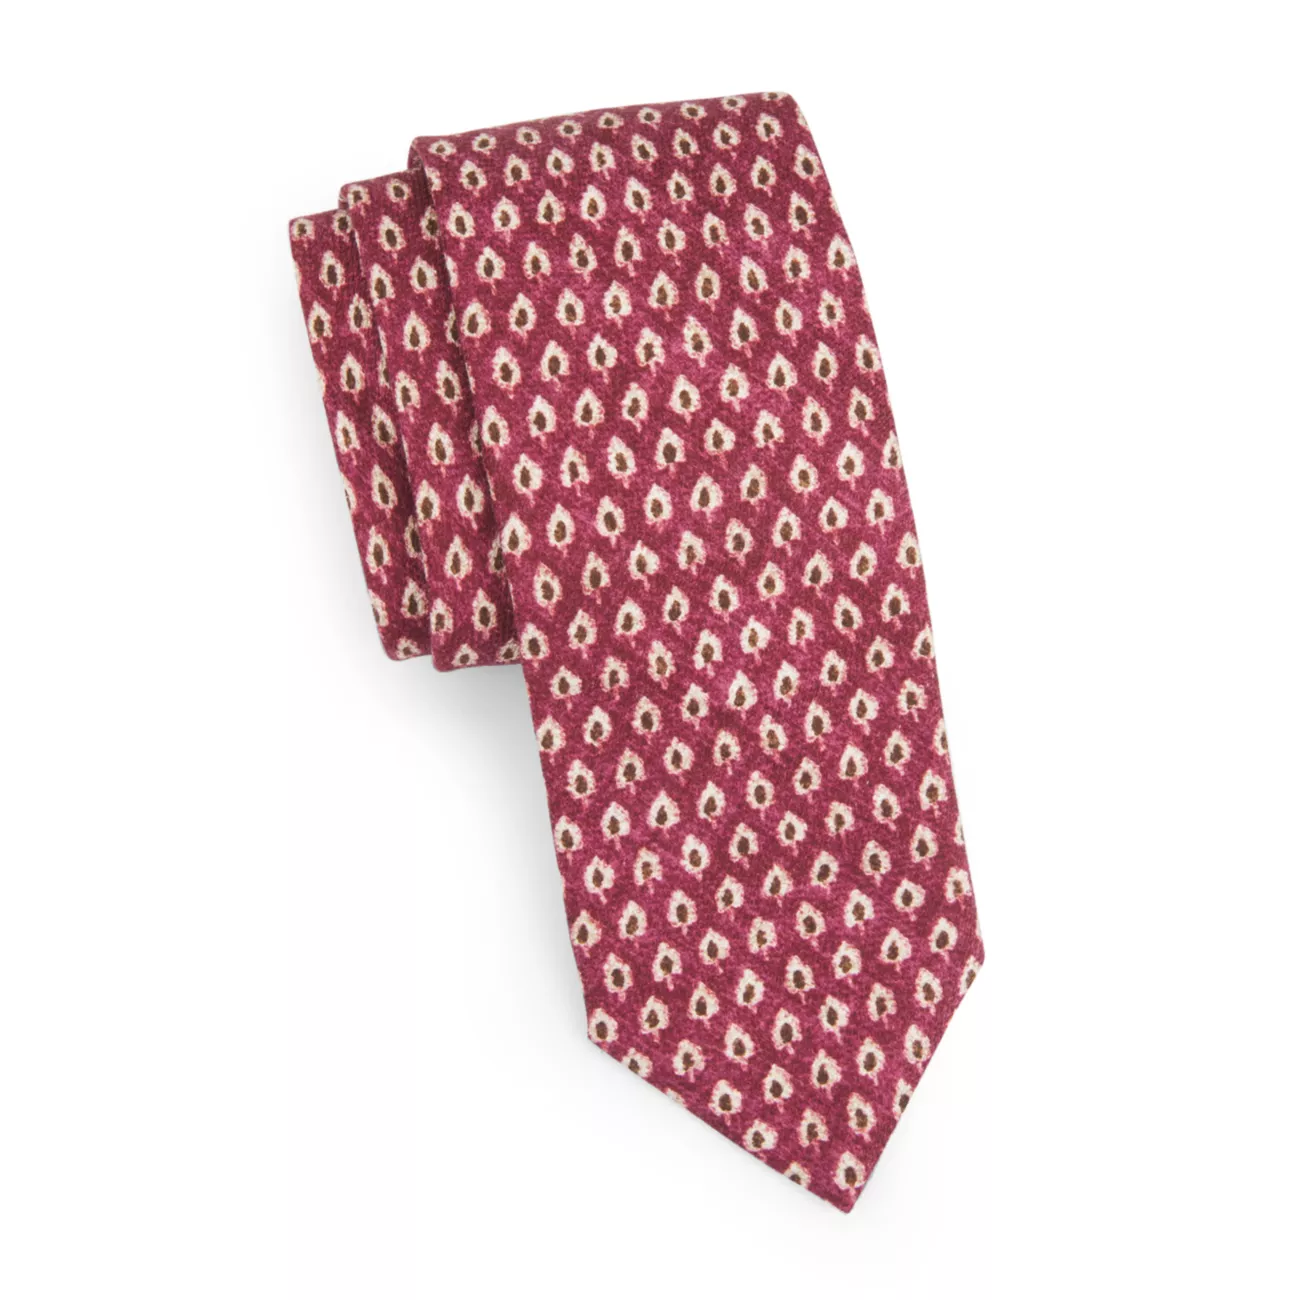 COLLECTION Мини-галстук с принтом деревьев Saks Fifth Avenue